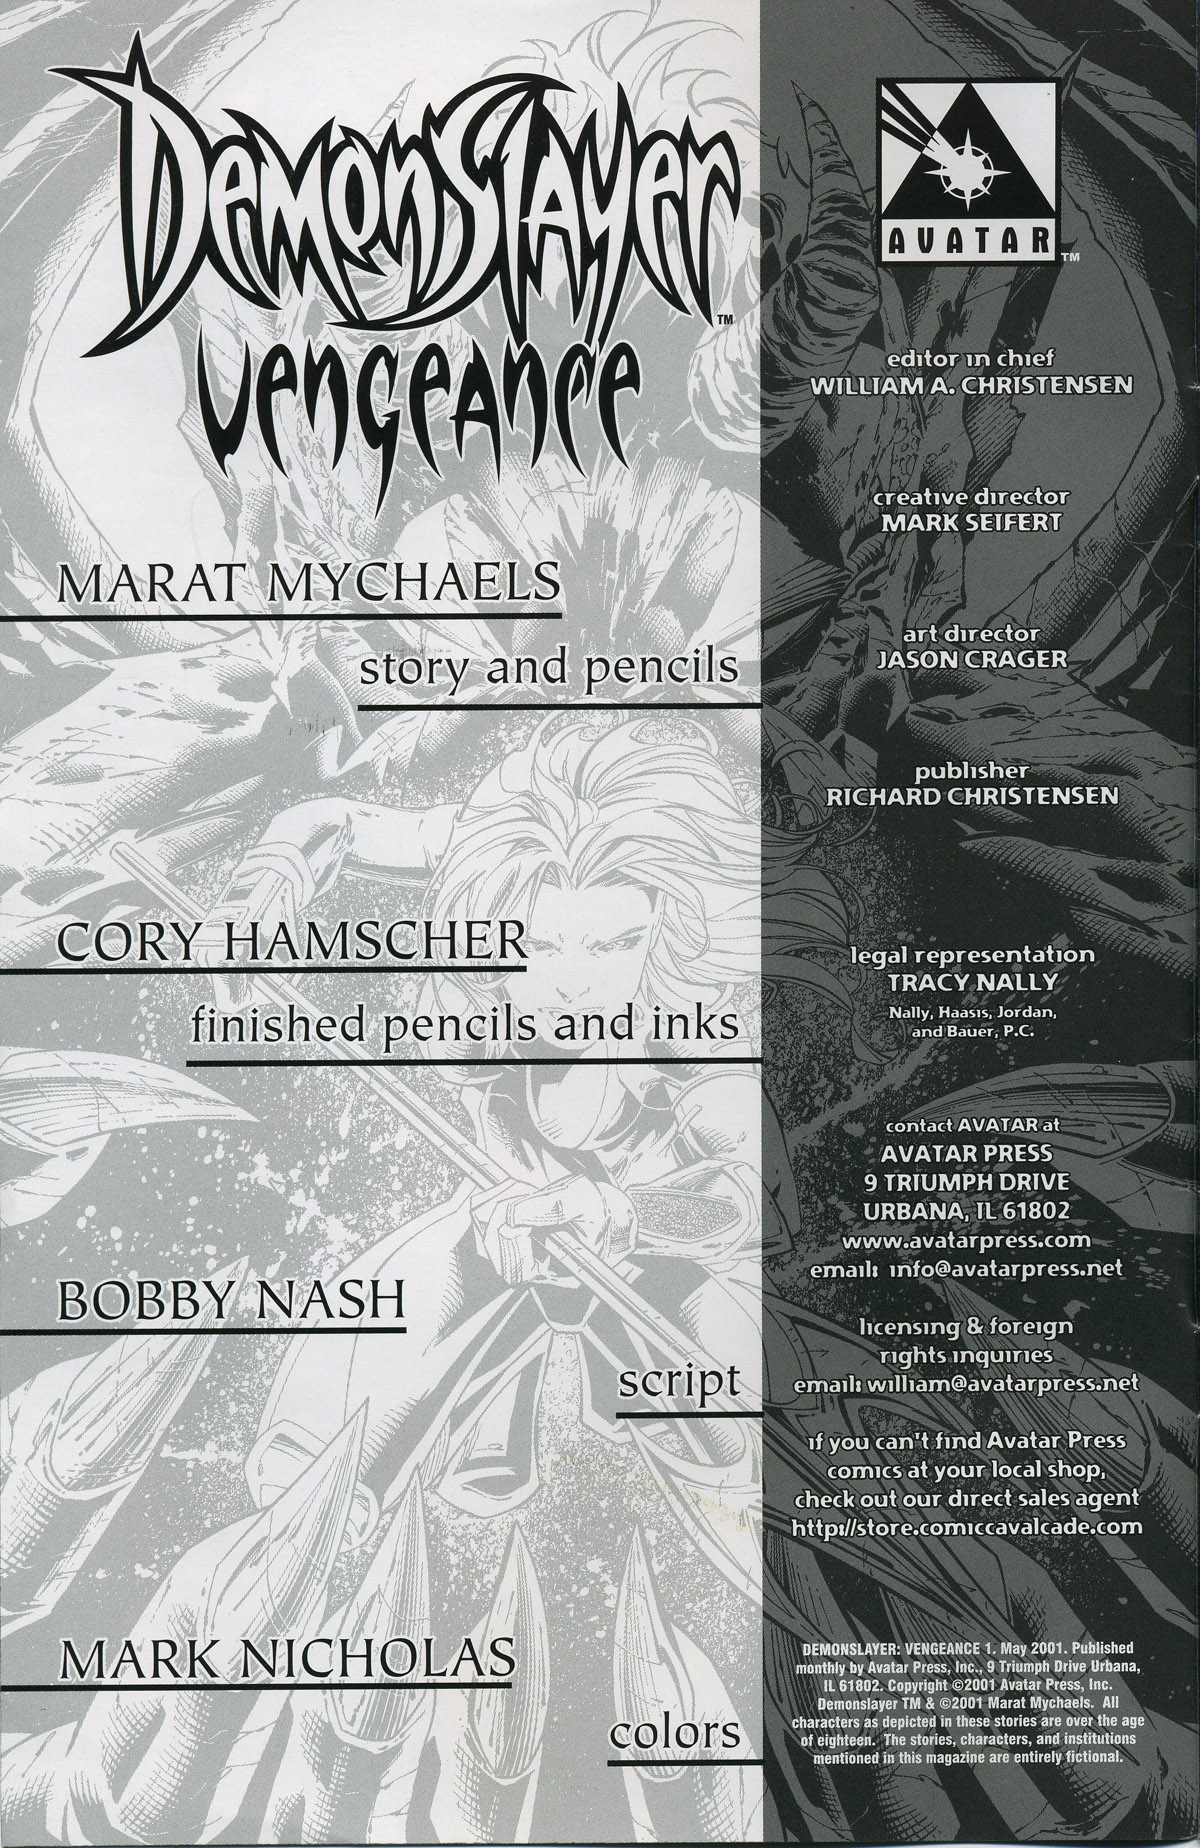 Read online Demonslayer: Vengeance comic -  Issue #1 - 2